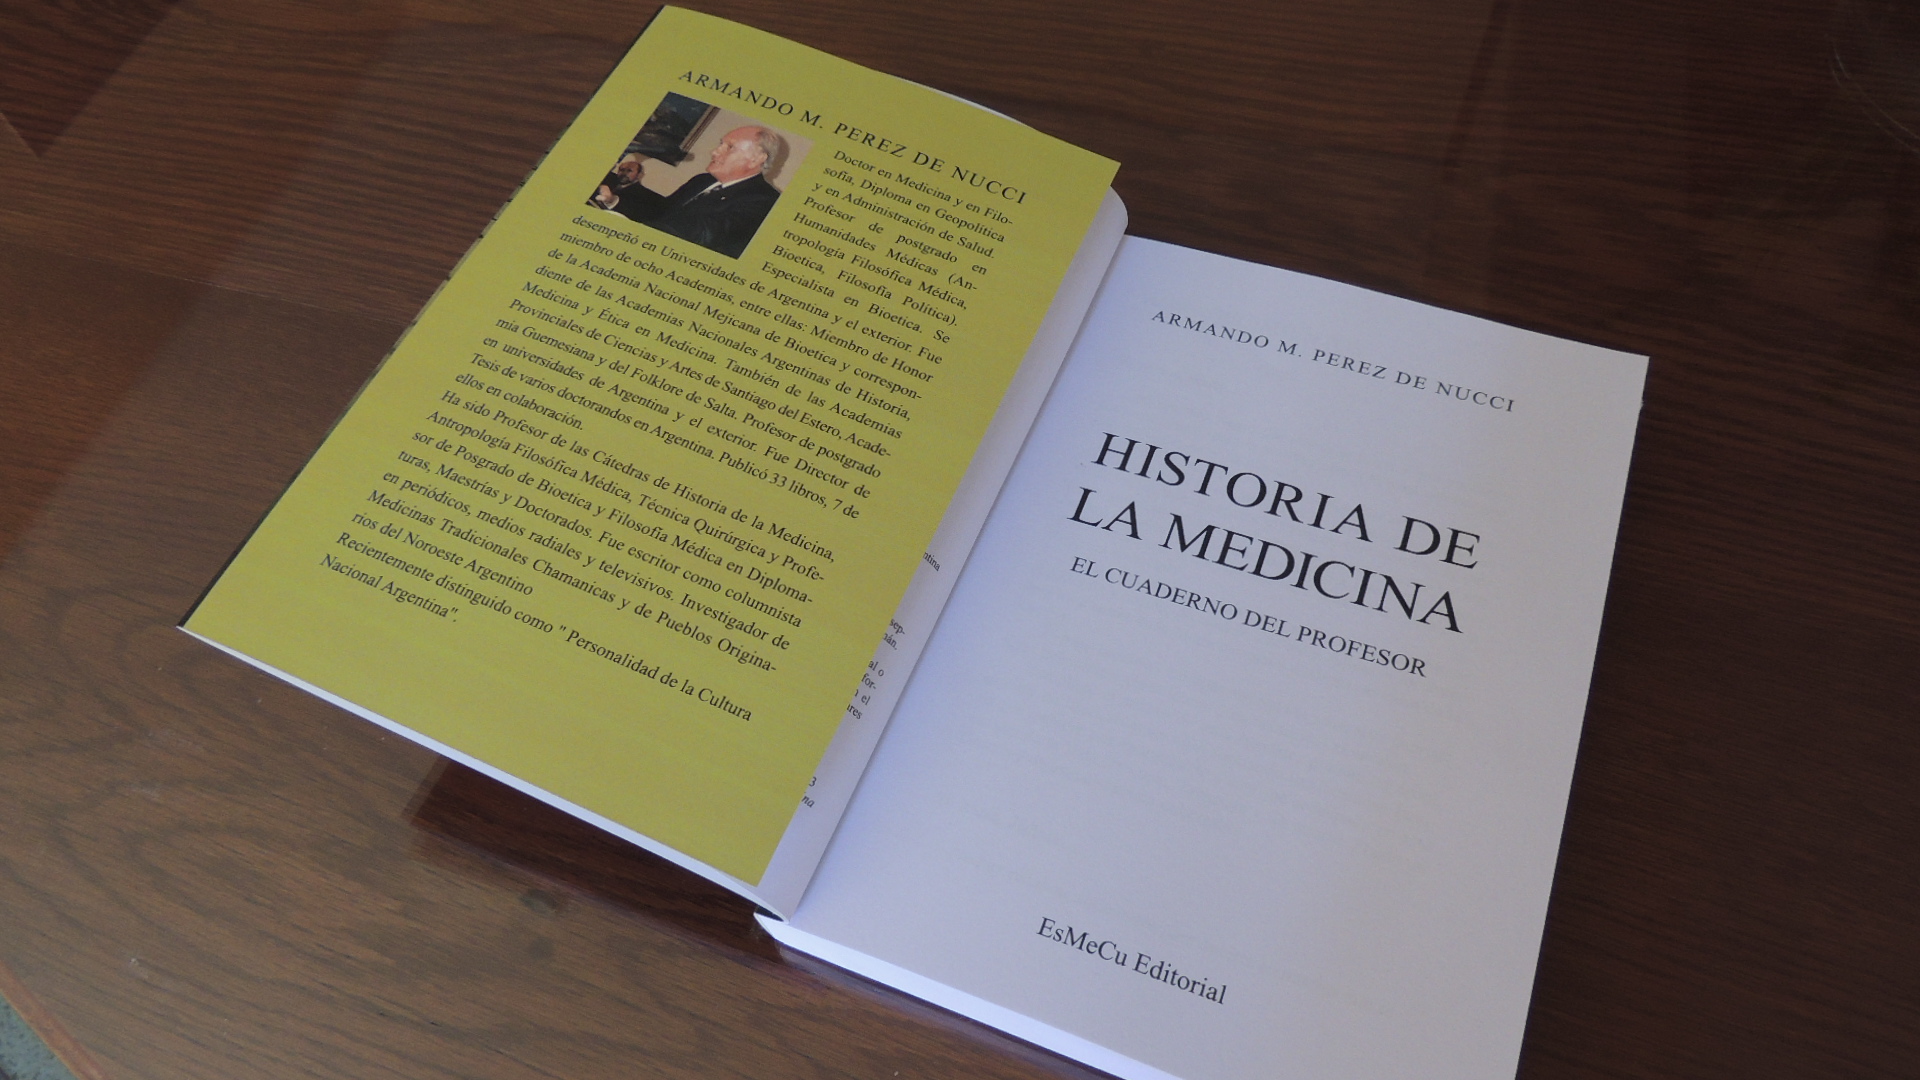 En este momento estás viendo El Cuaderno del Profesor, obra póstuma del Dr. Armando Pérez de Nucci